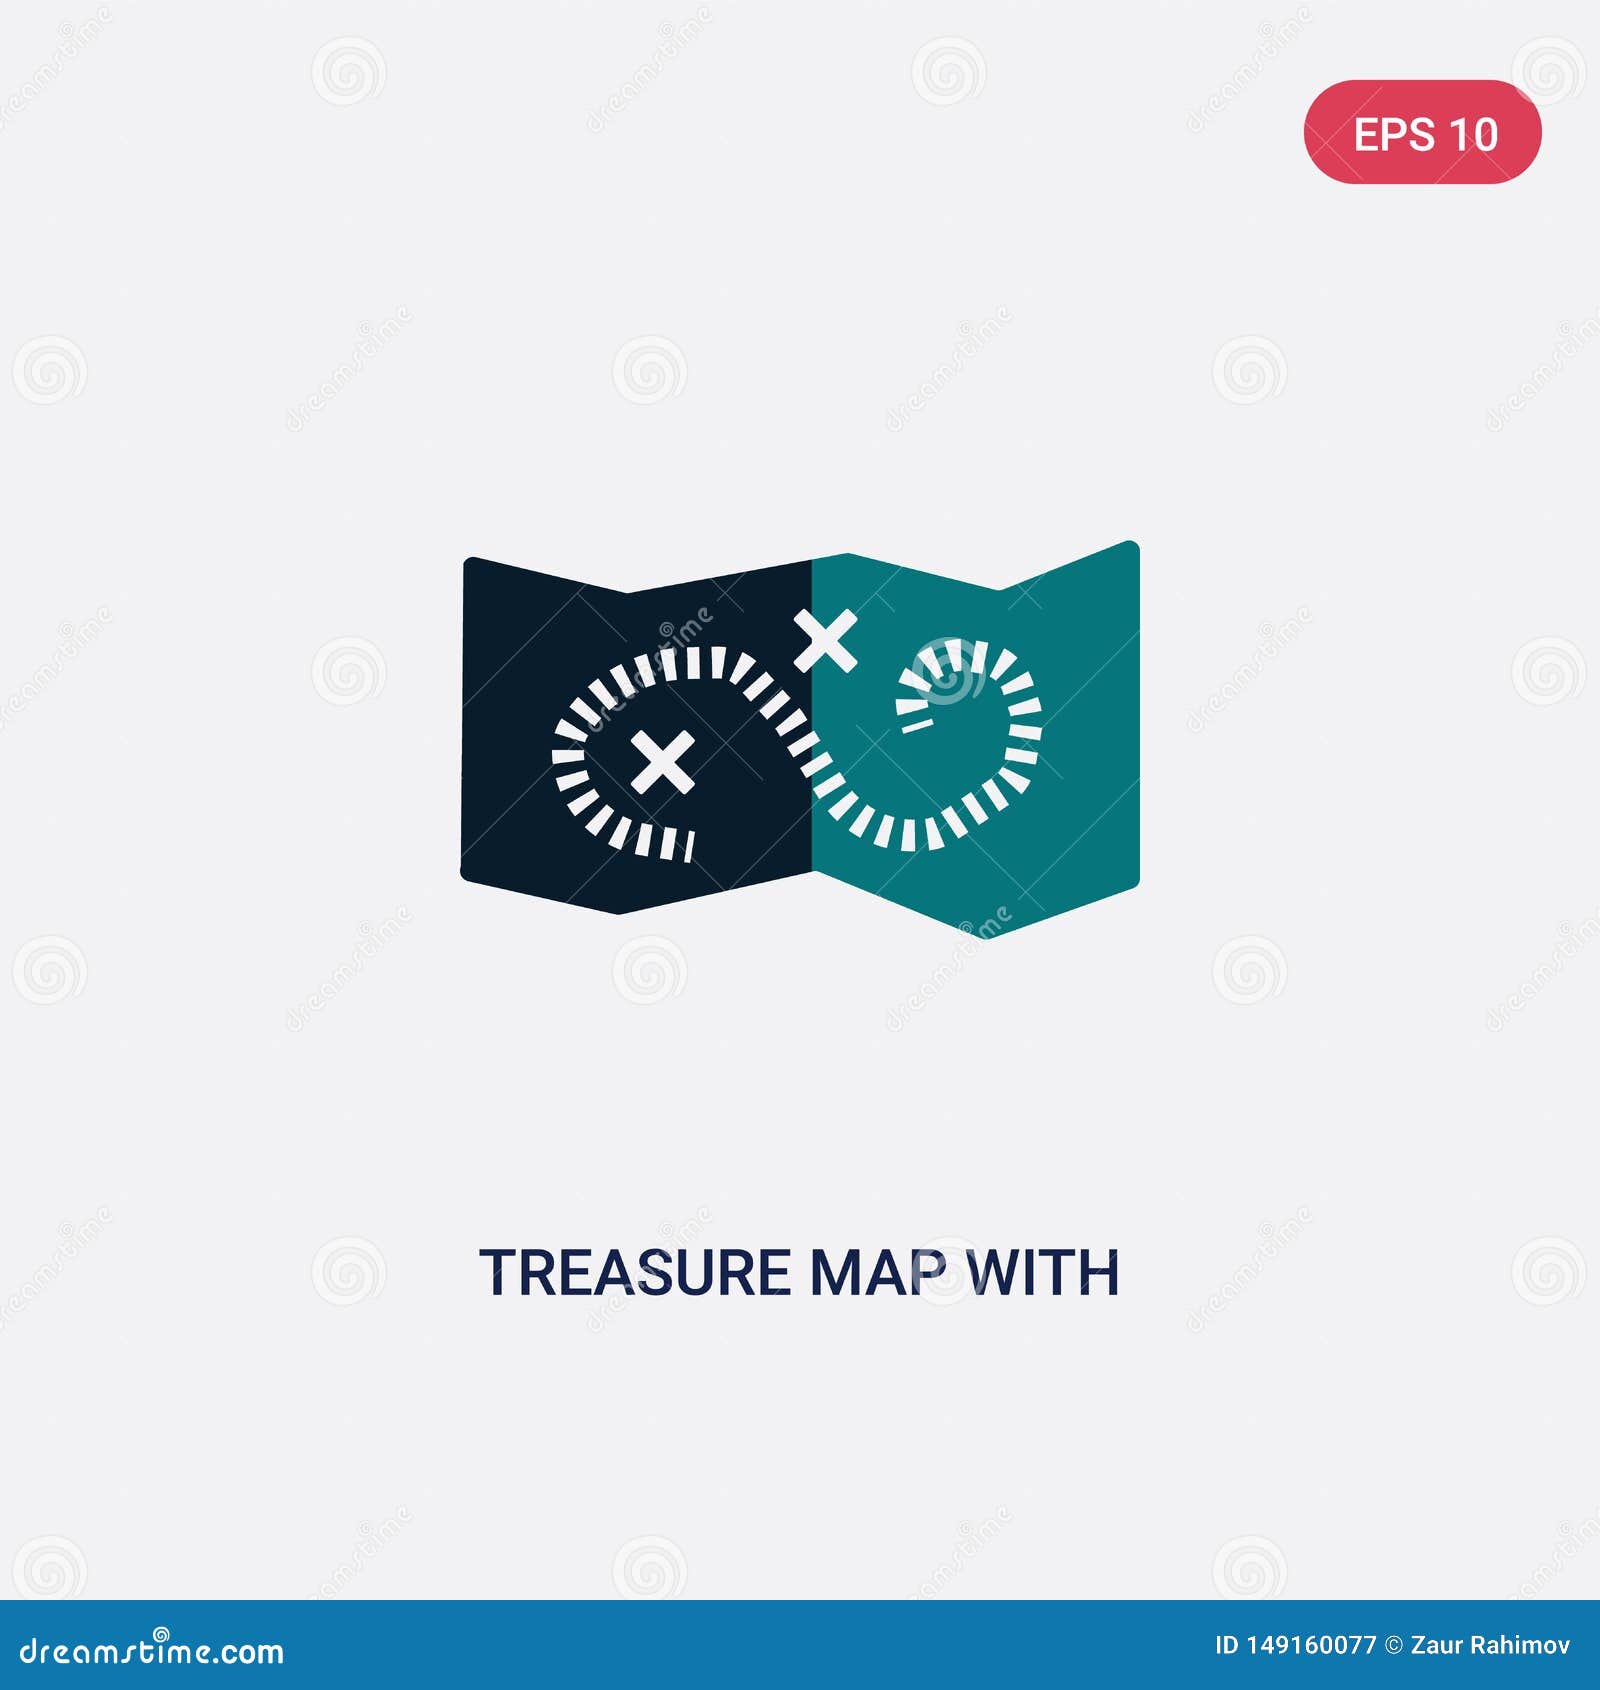 Mapa do tesouro - ícones de mapas e bandeiras grátis